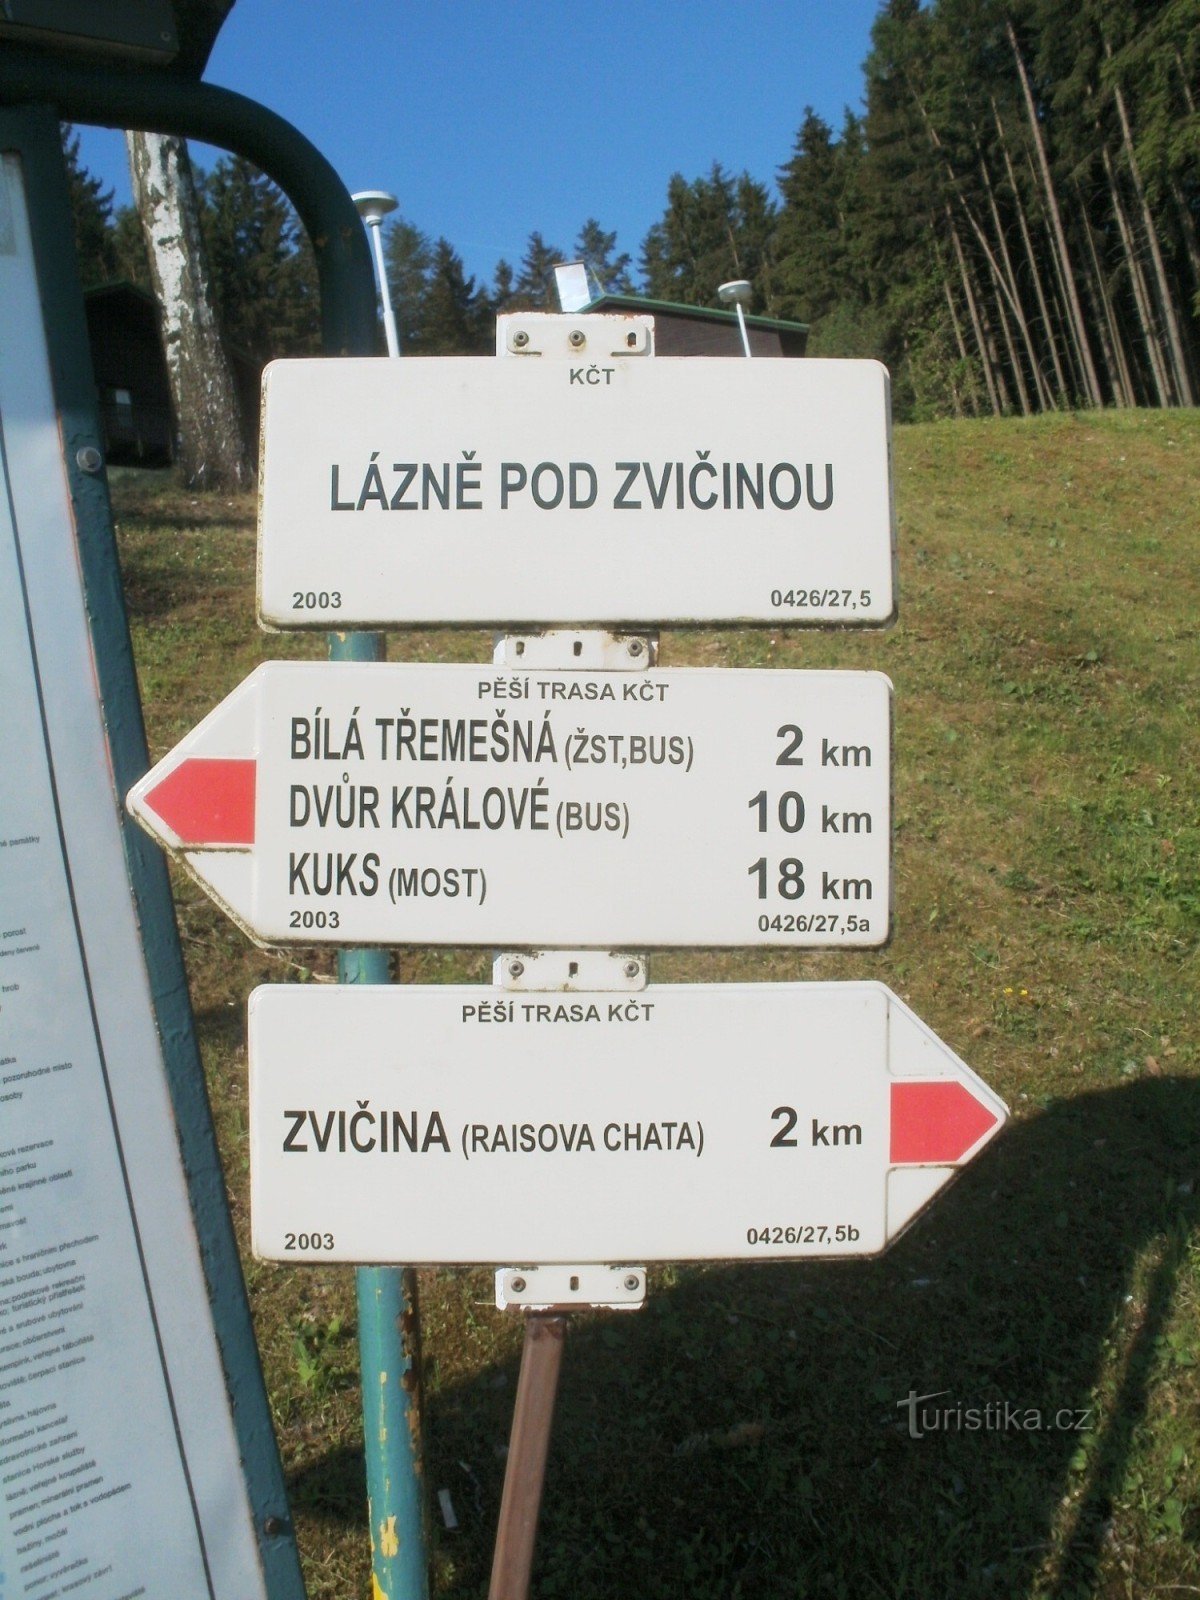 răscrucea turistică din Lázně pod Zvičinou